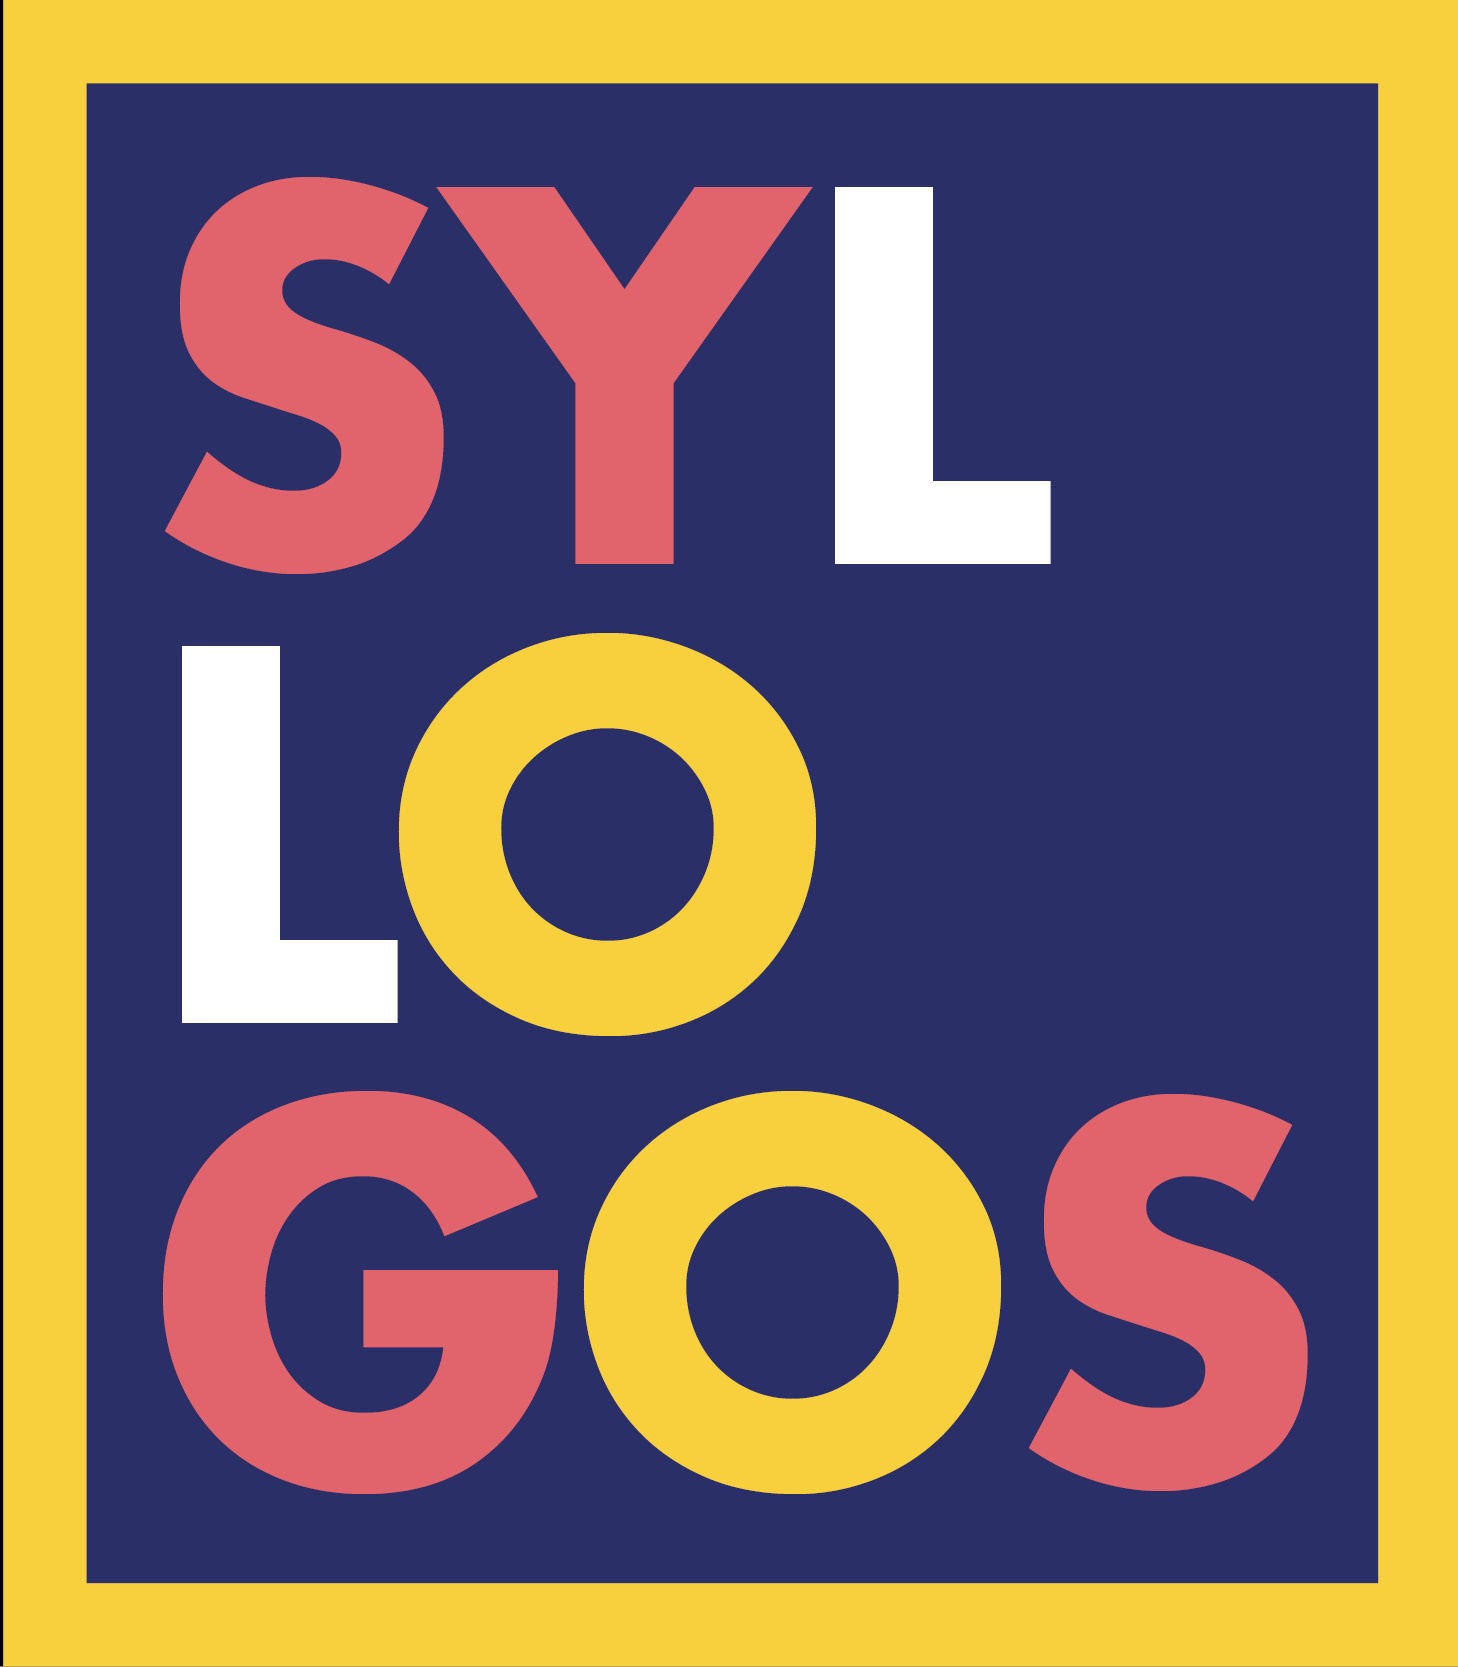 SYLLOGOS - Logo